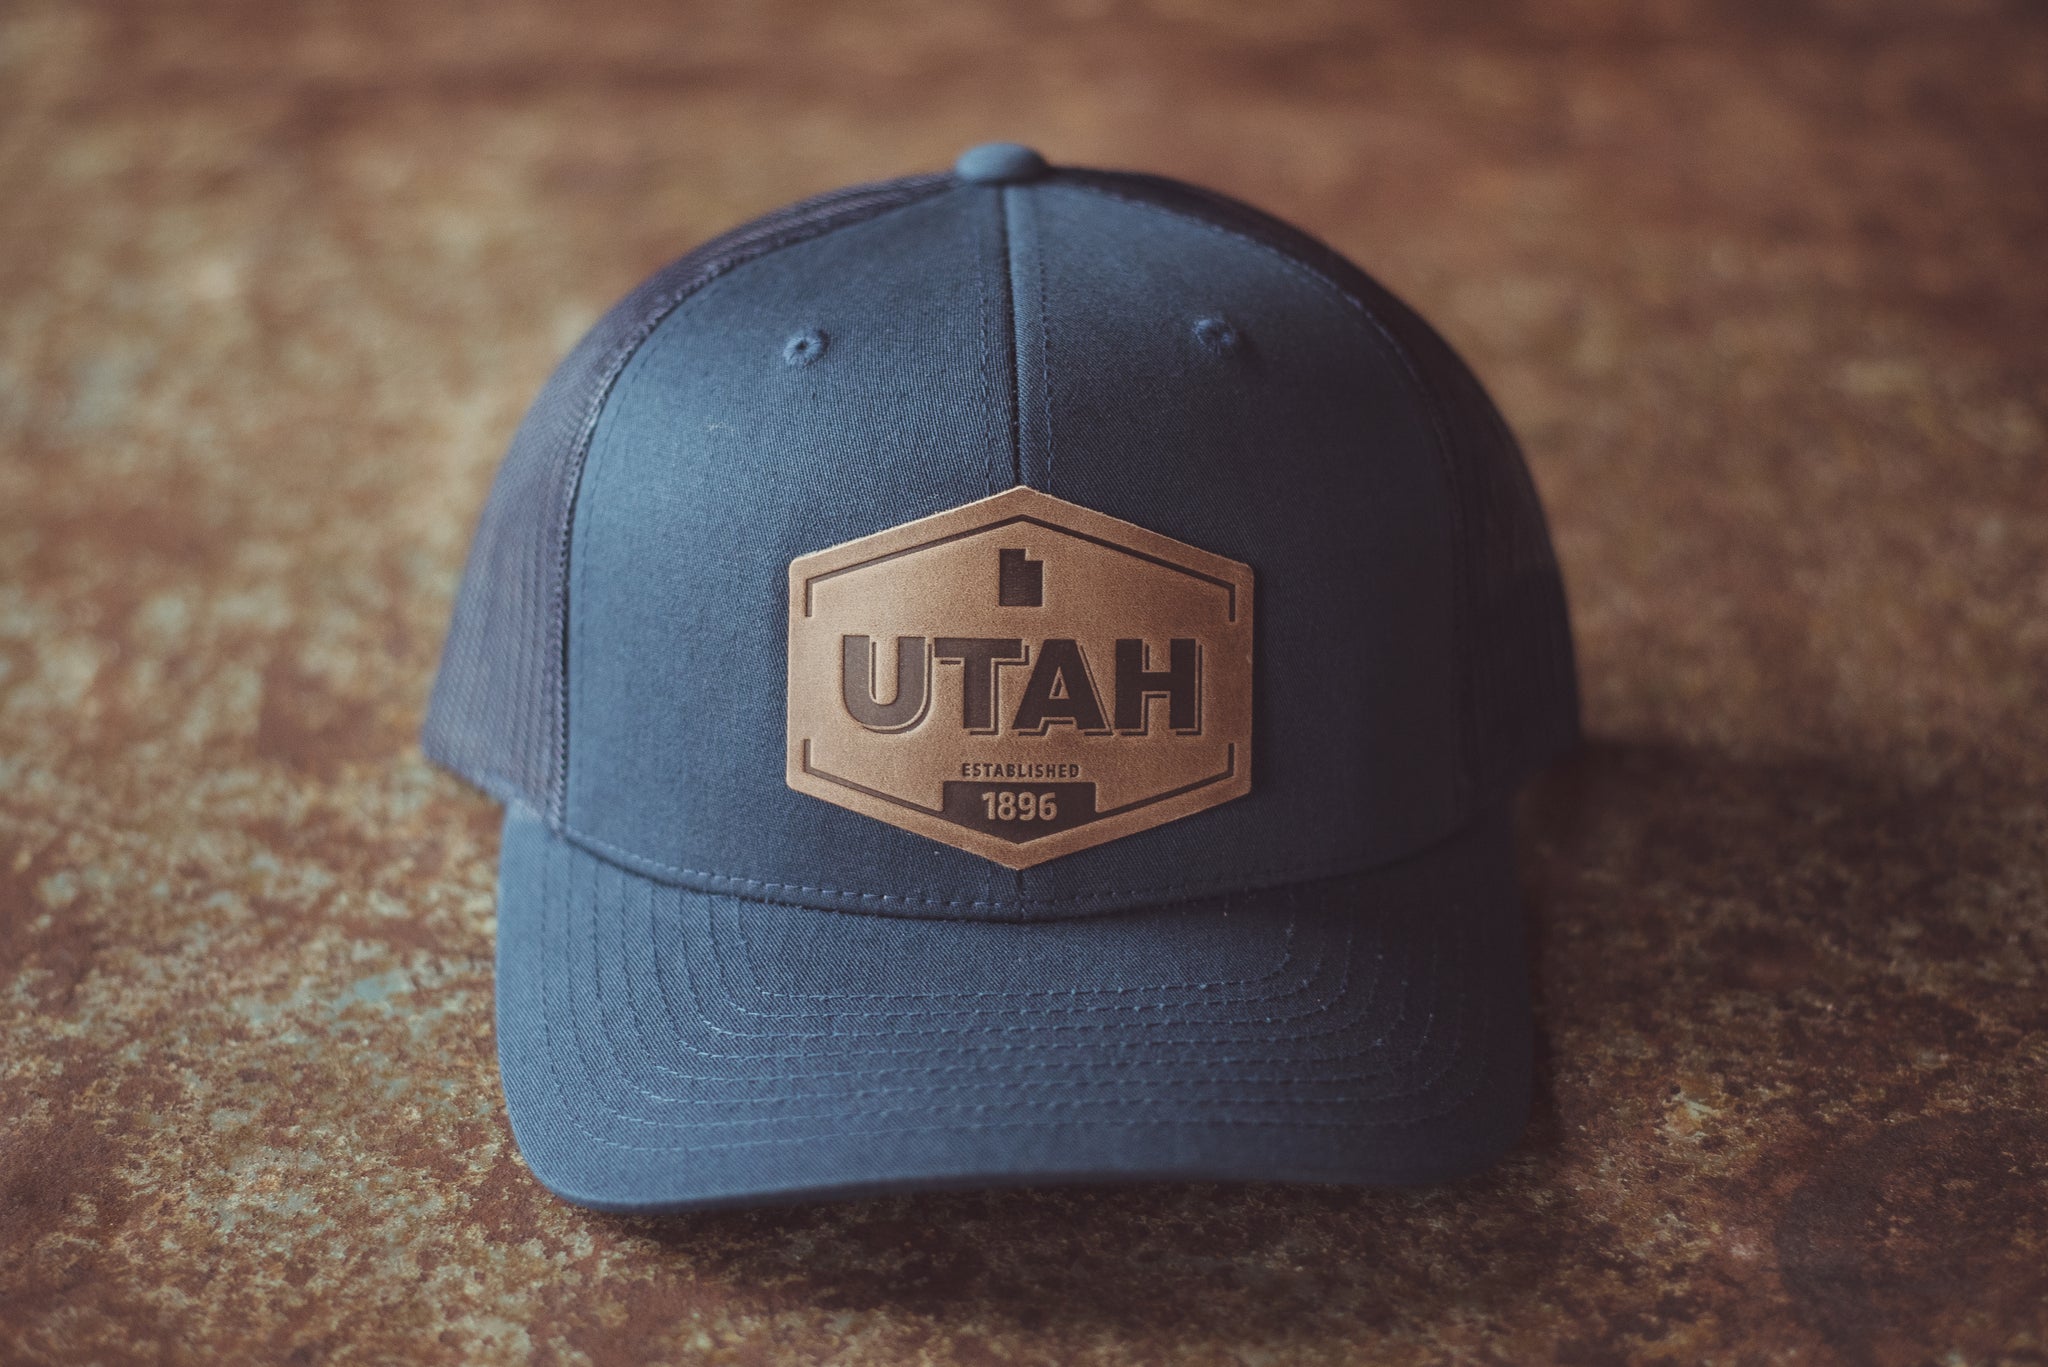 Utah Established Hat